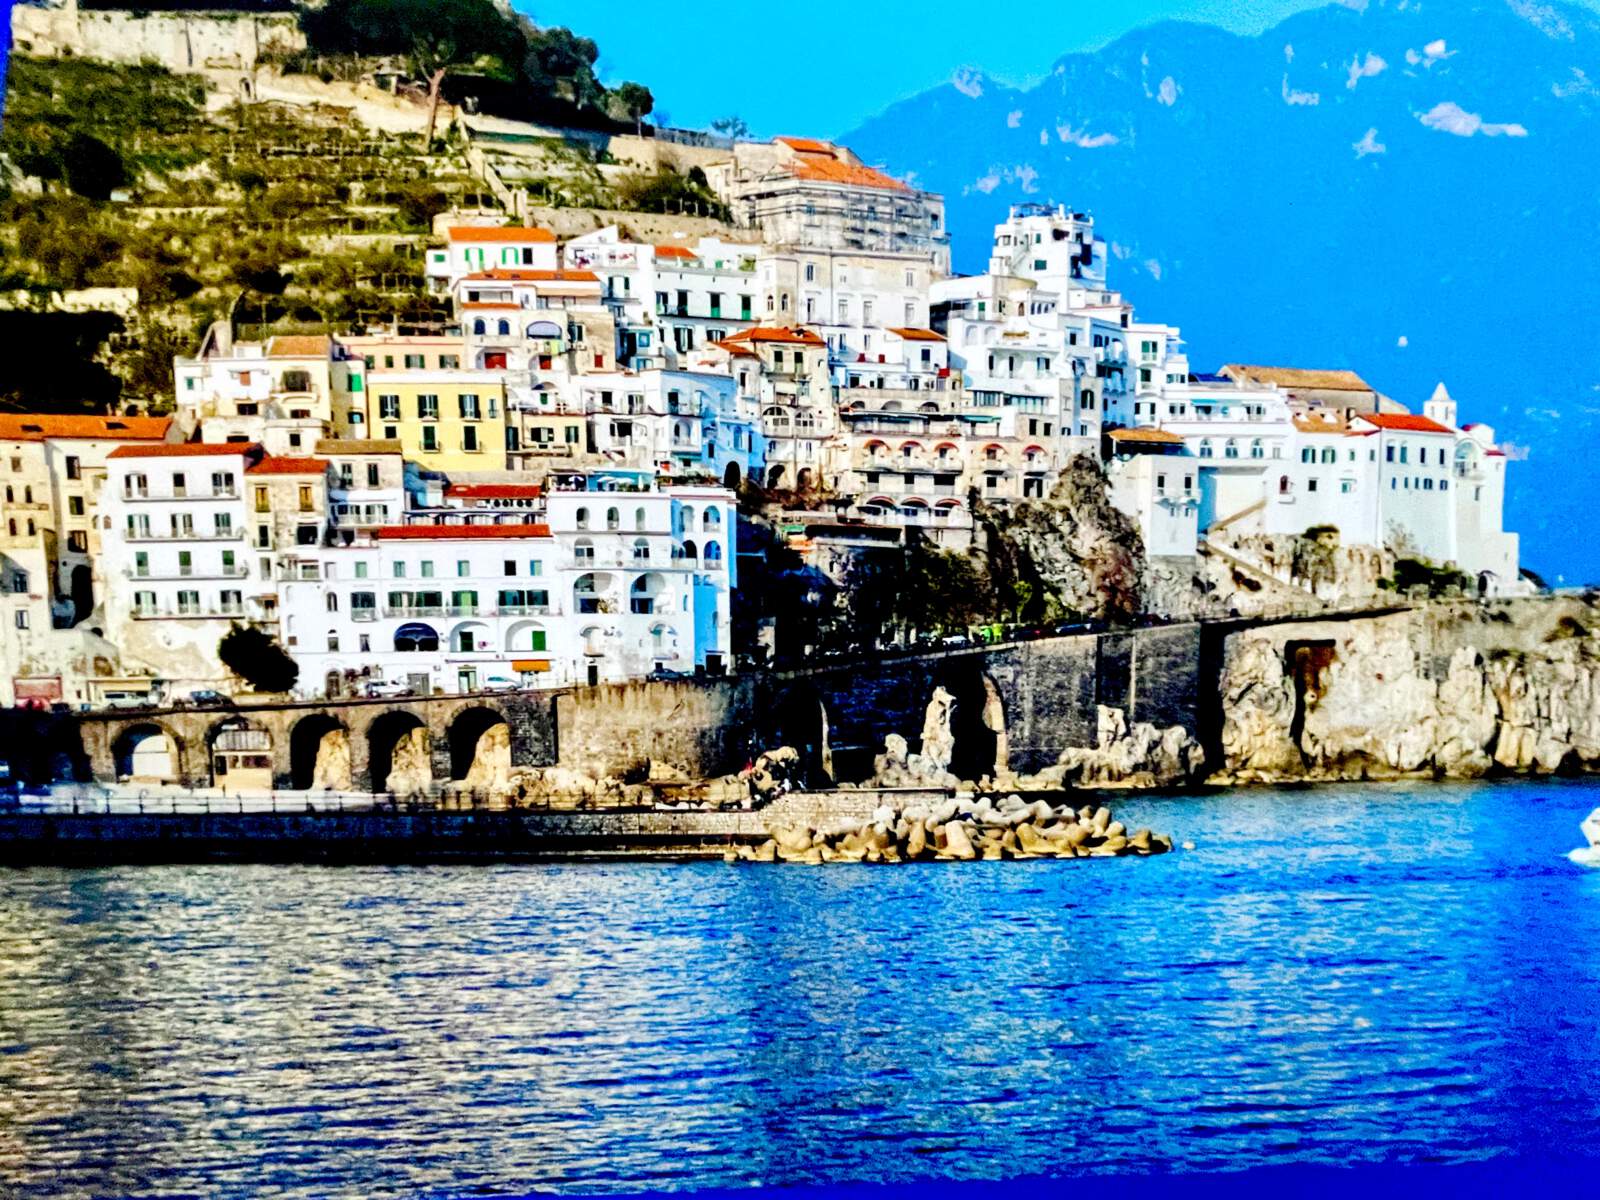 Reisebericht über Positano und die Amalfiküste von Bibi Horst